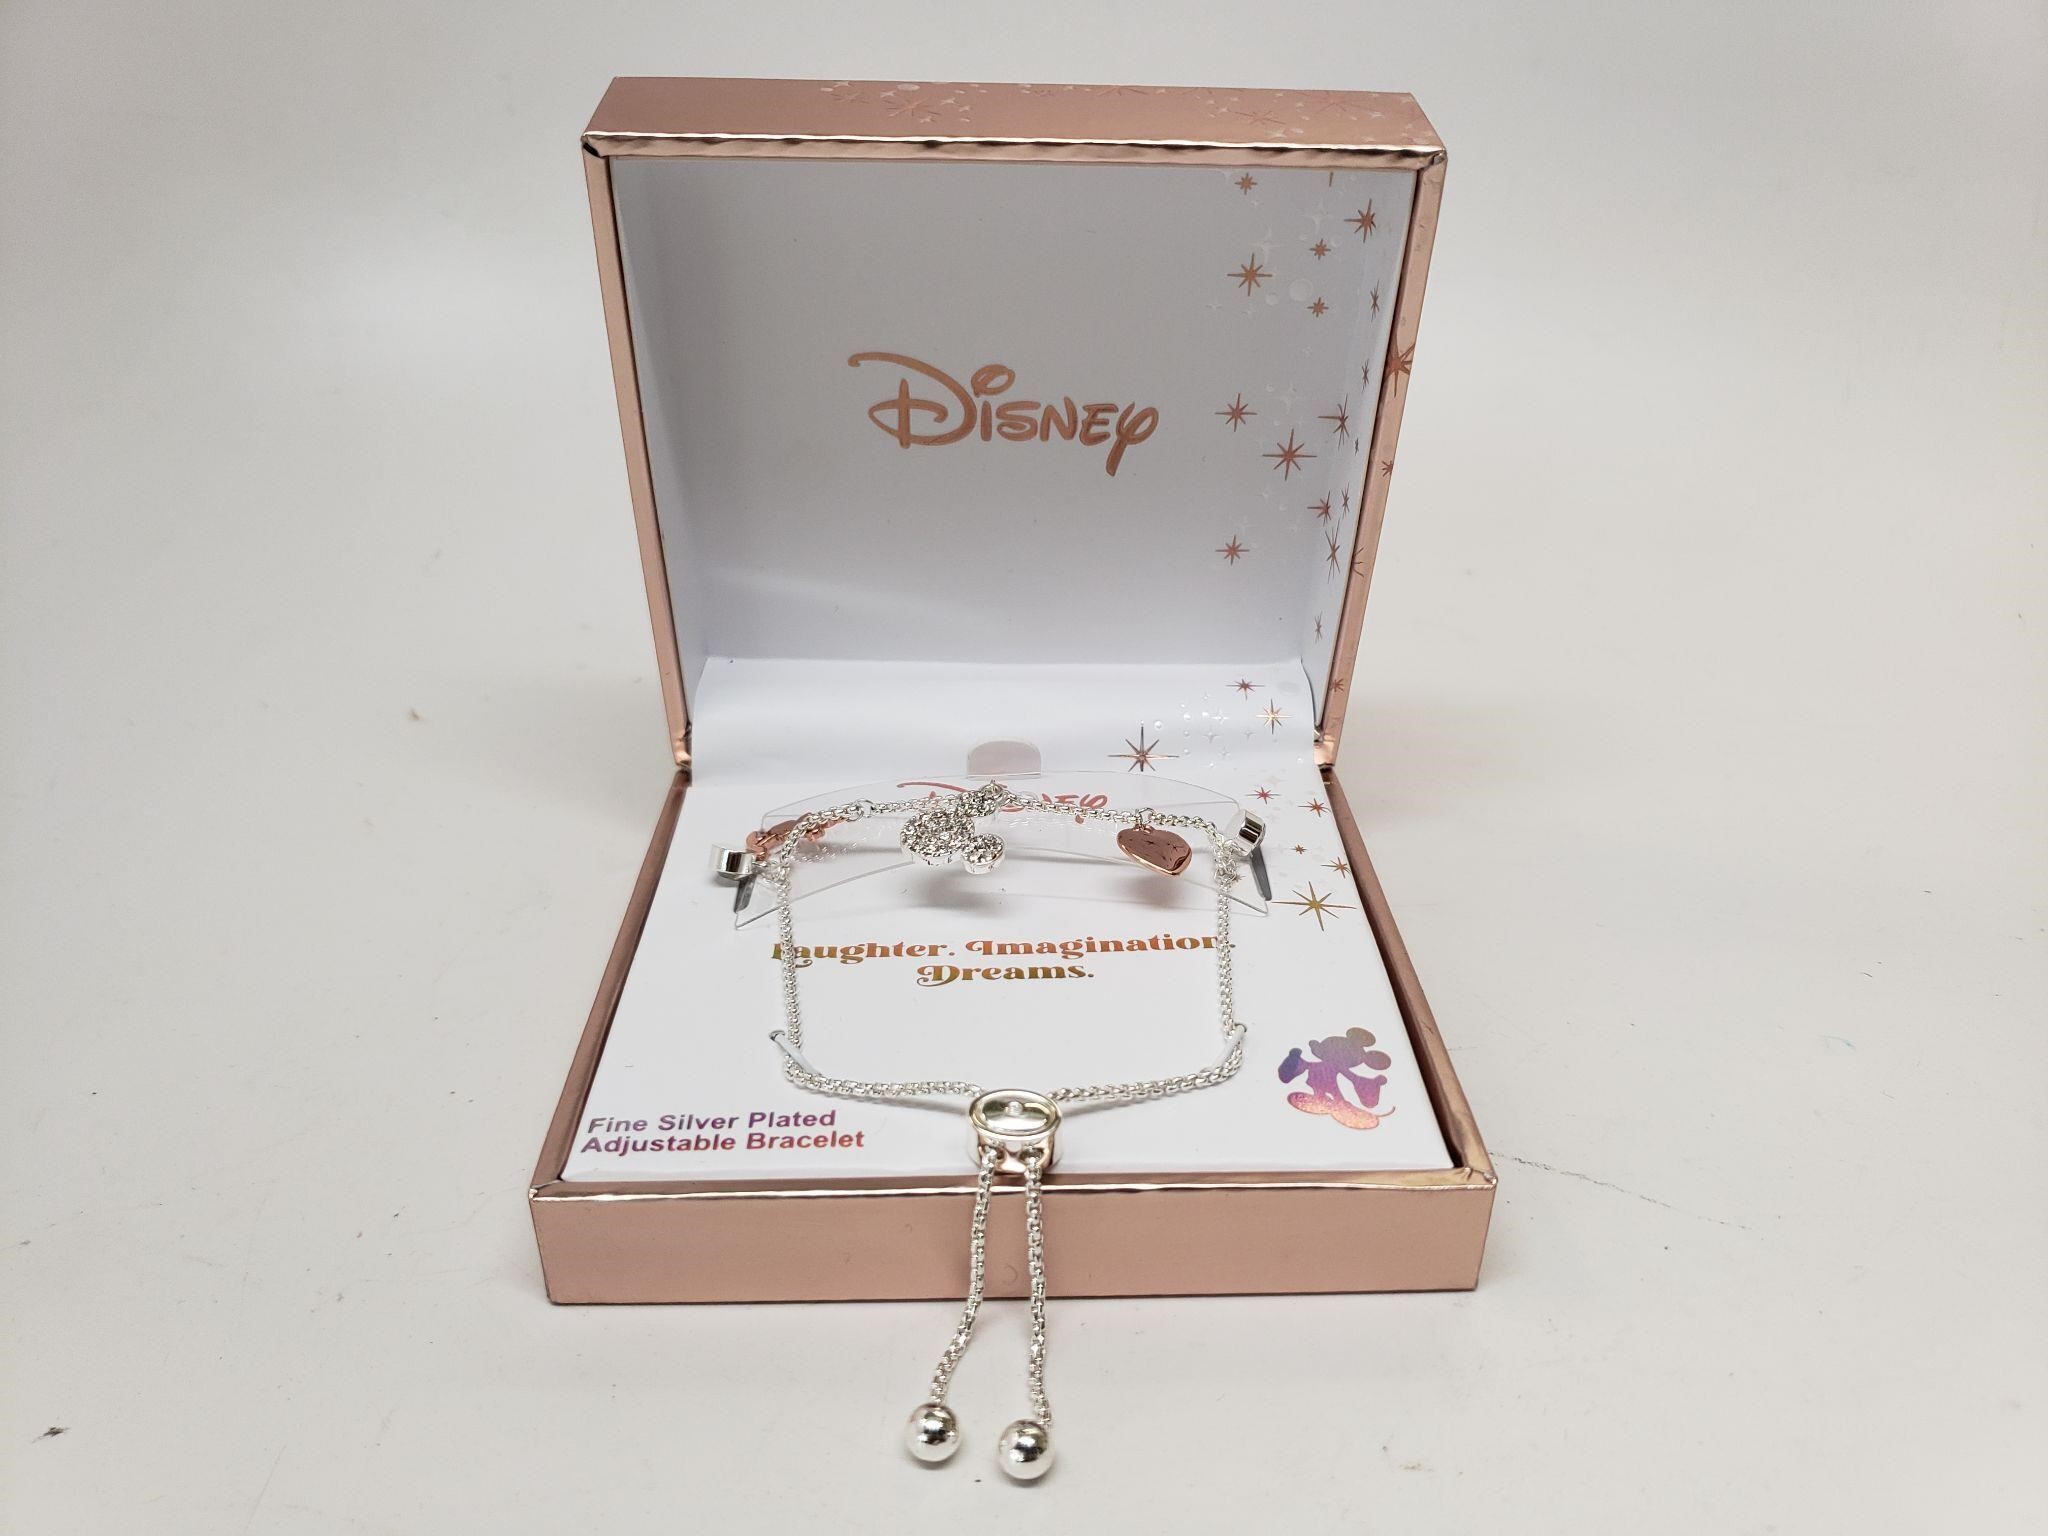 Disney Fine Silver Plated Adjustable Bracelet